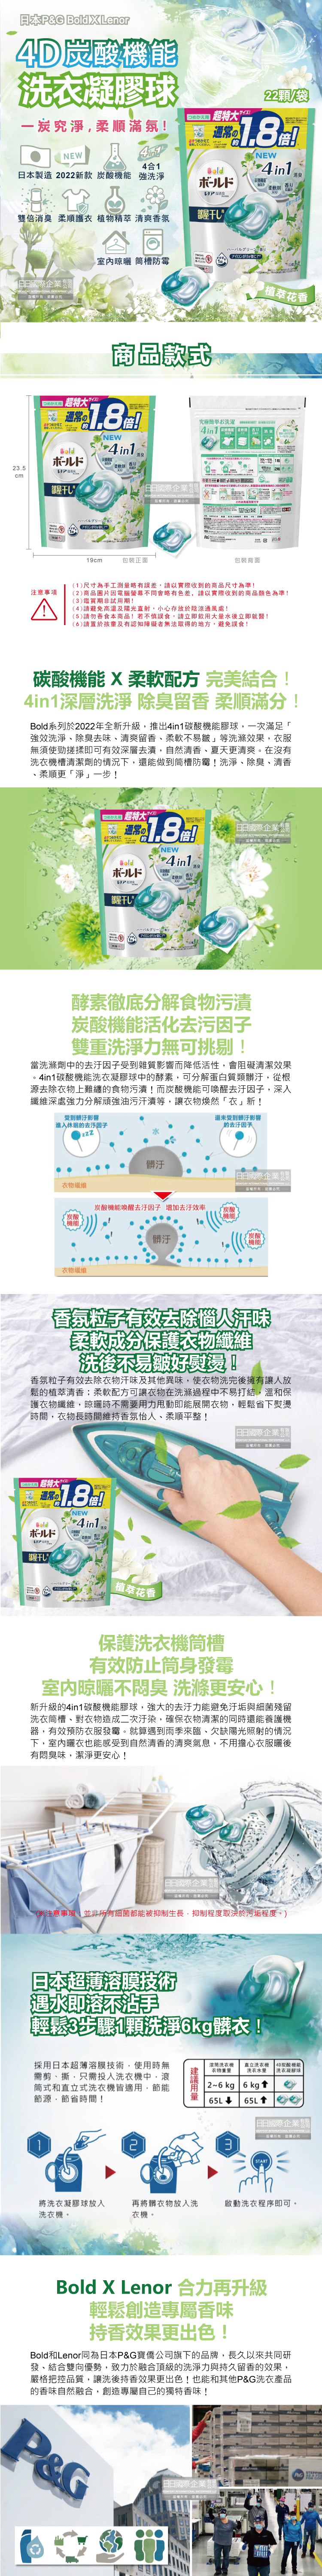 (清潔-衣物)日本PG-4D炭酸機能洗衣球22顆袋裝(淺綠色植萃花香)介紹圖